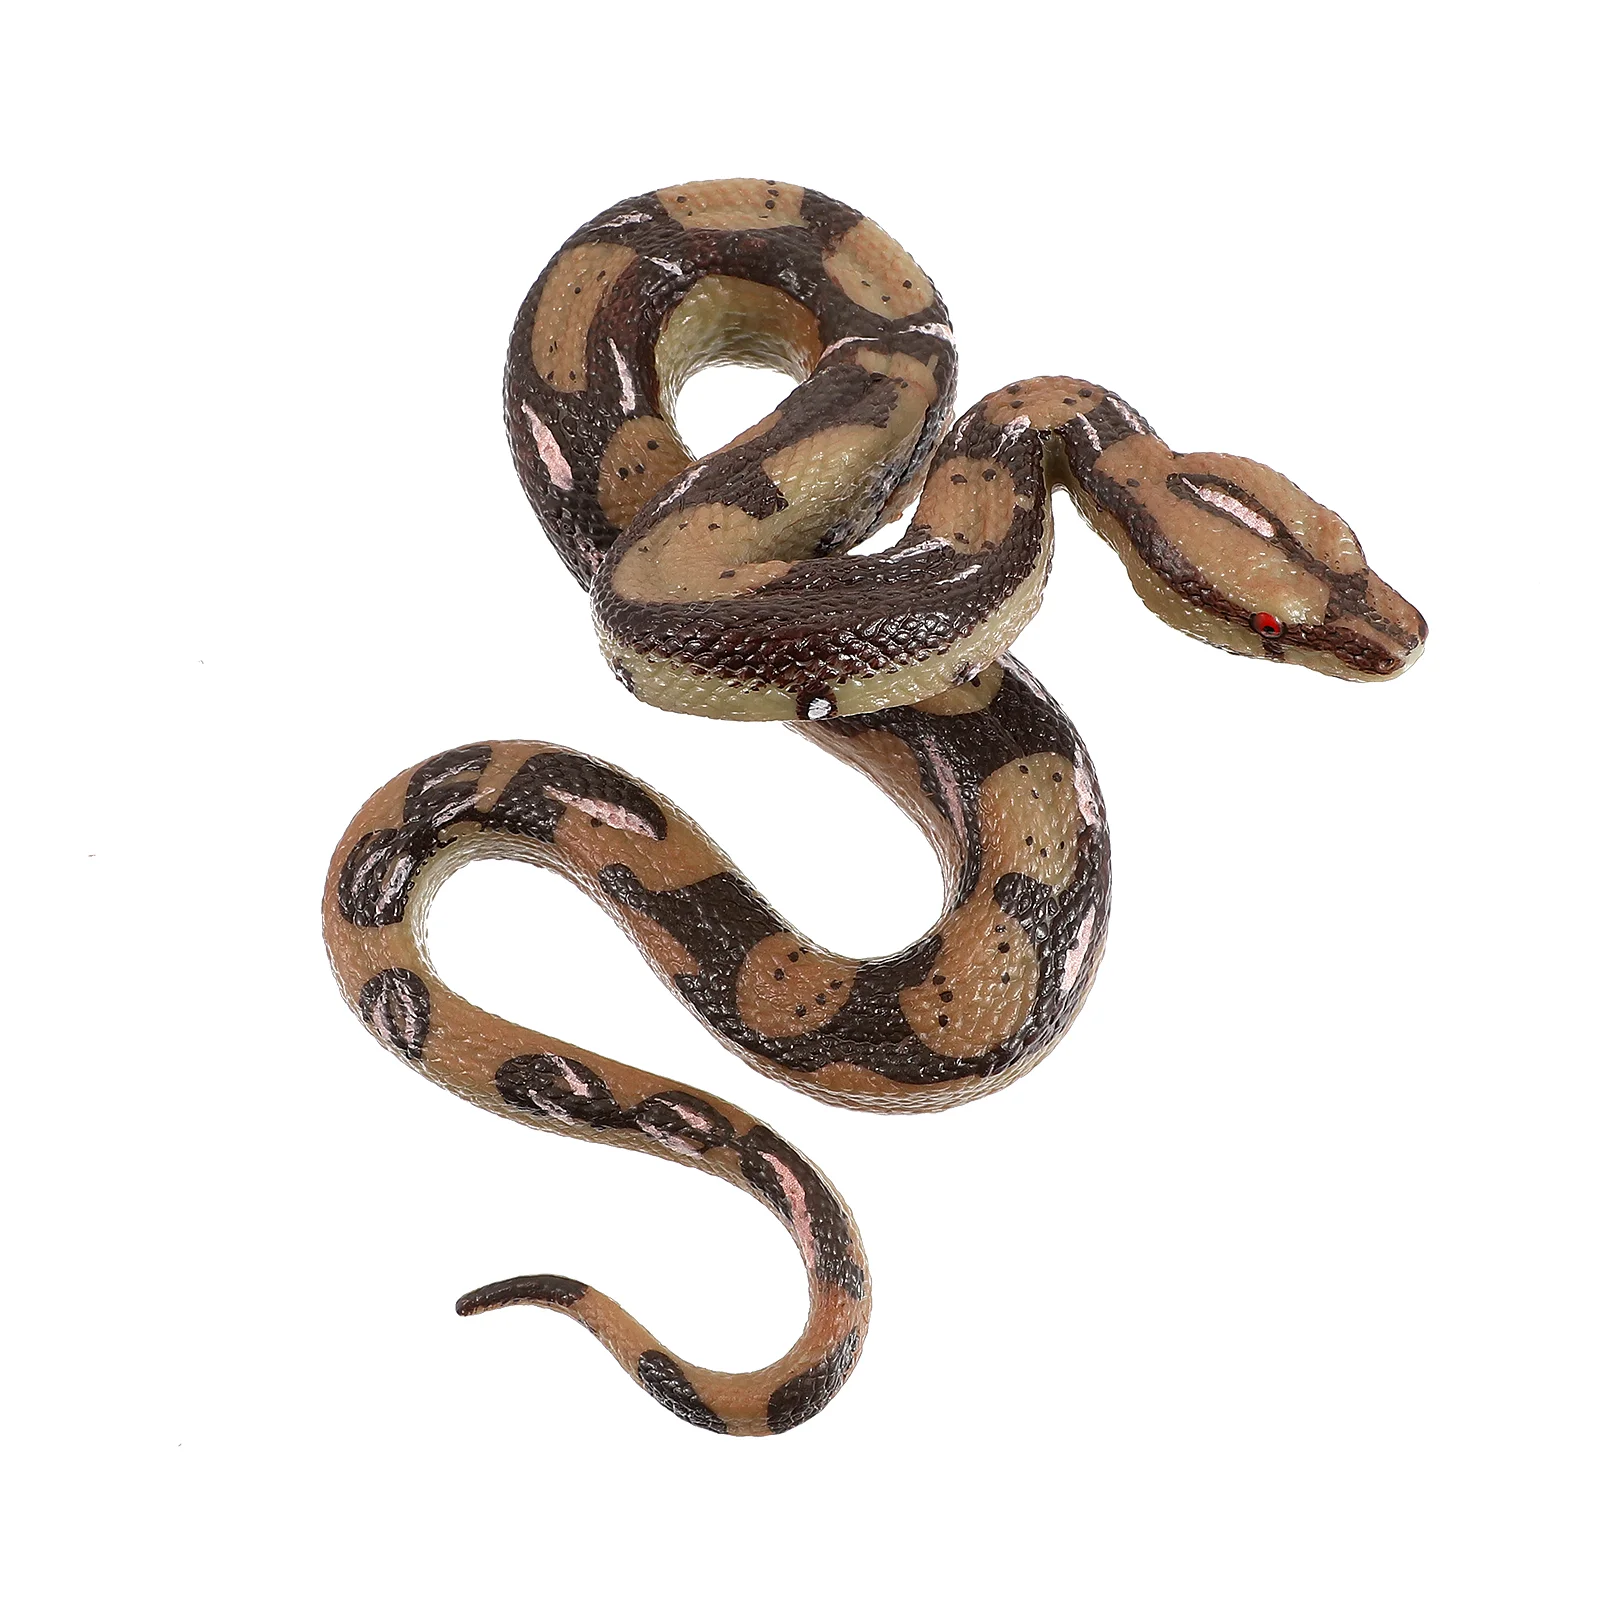 

Имитация змеи Реалистичная страшная змея для науки обучающая игрушка